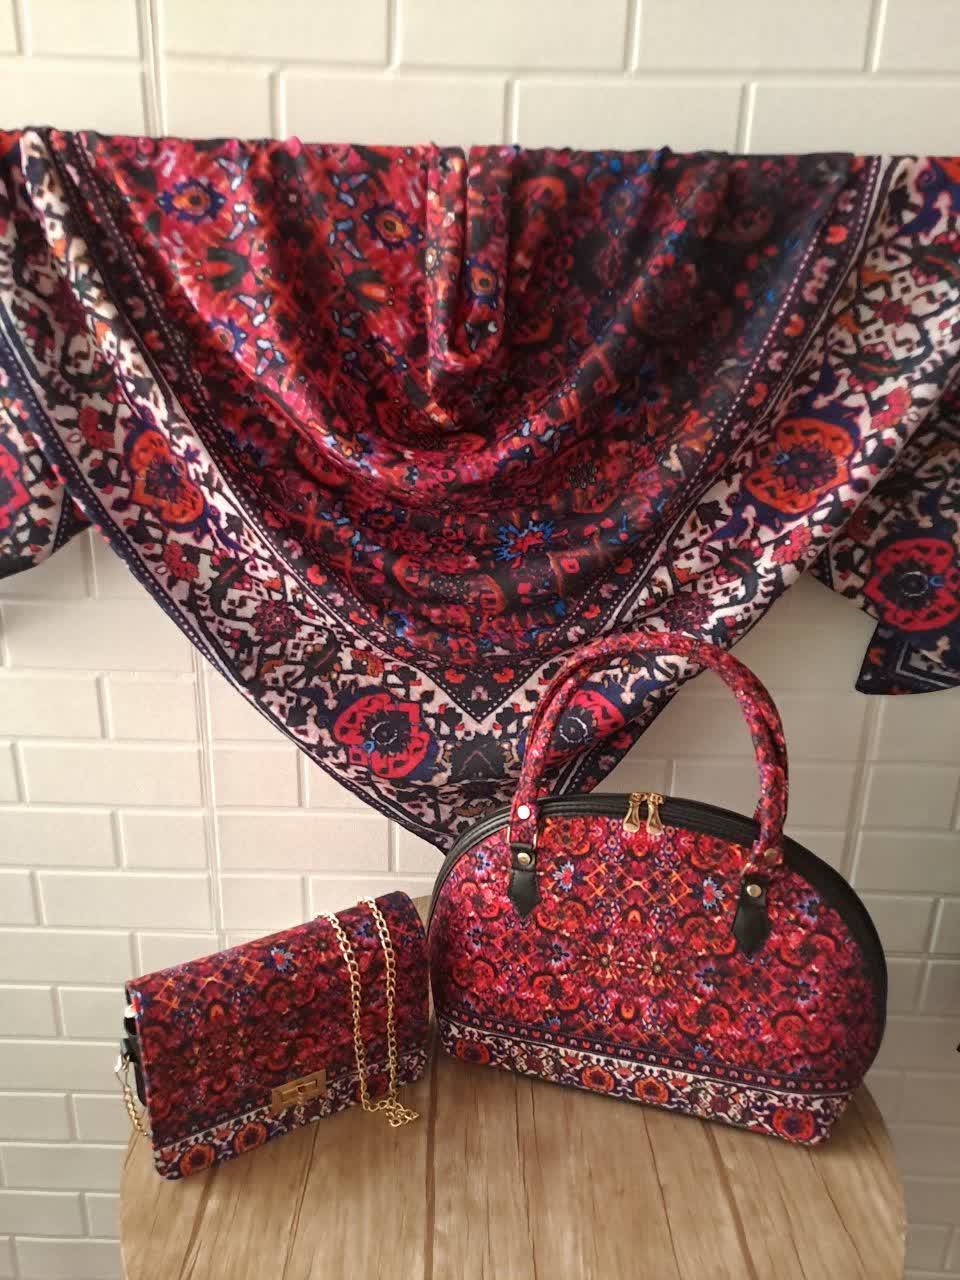 ست کیف و روسری زنانه با کیف نیمگرد طرح سنتی رنگ قرمز ارسال رایگان کد na1402